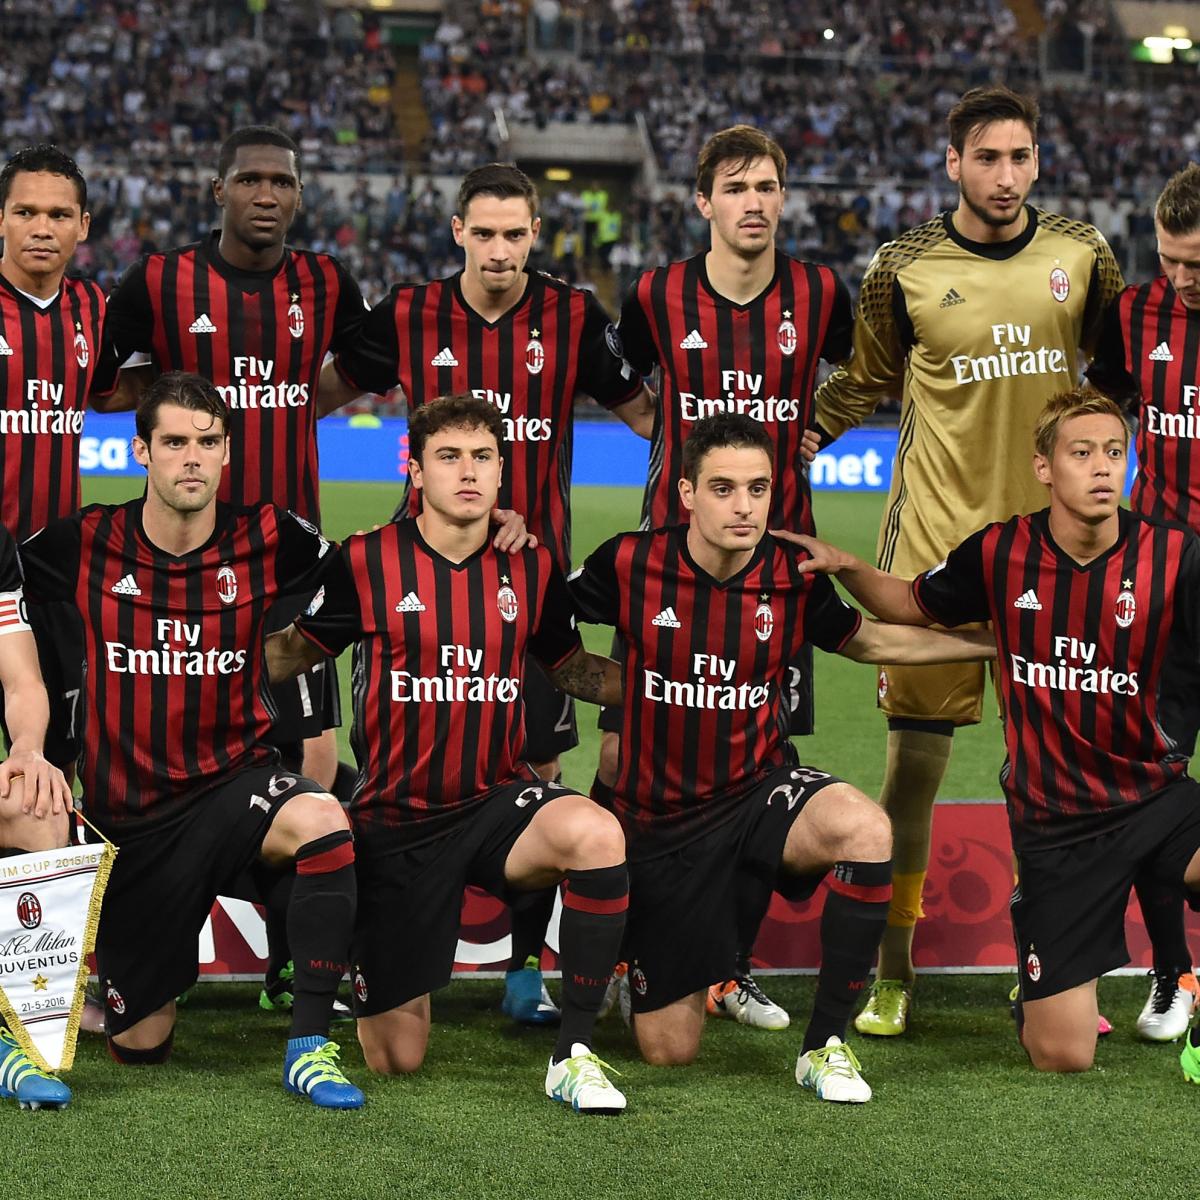 AC Milan 2015/16 Home Kit